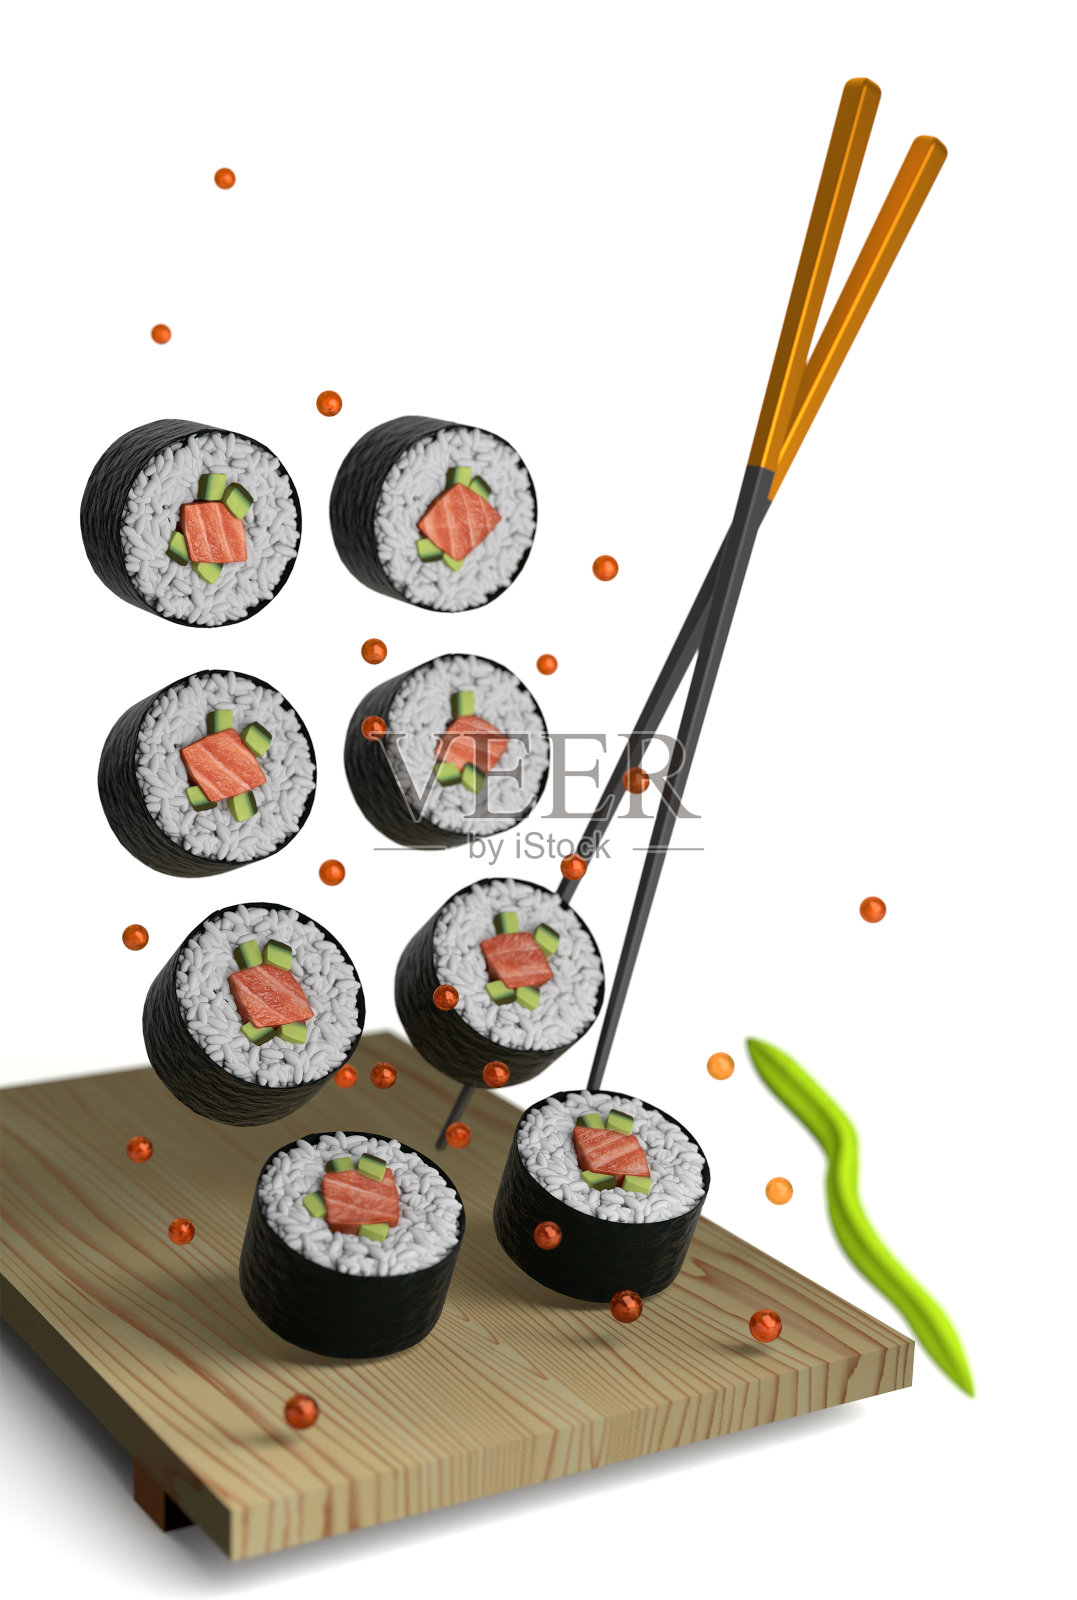 用筷子和盘子之间放置寿司片的3d渲染构图。飞片，红鱼子酱，葱和芝麻在白色背景上分离。流行寿司食物的垂直概念照片摄影图片